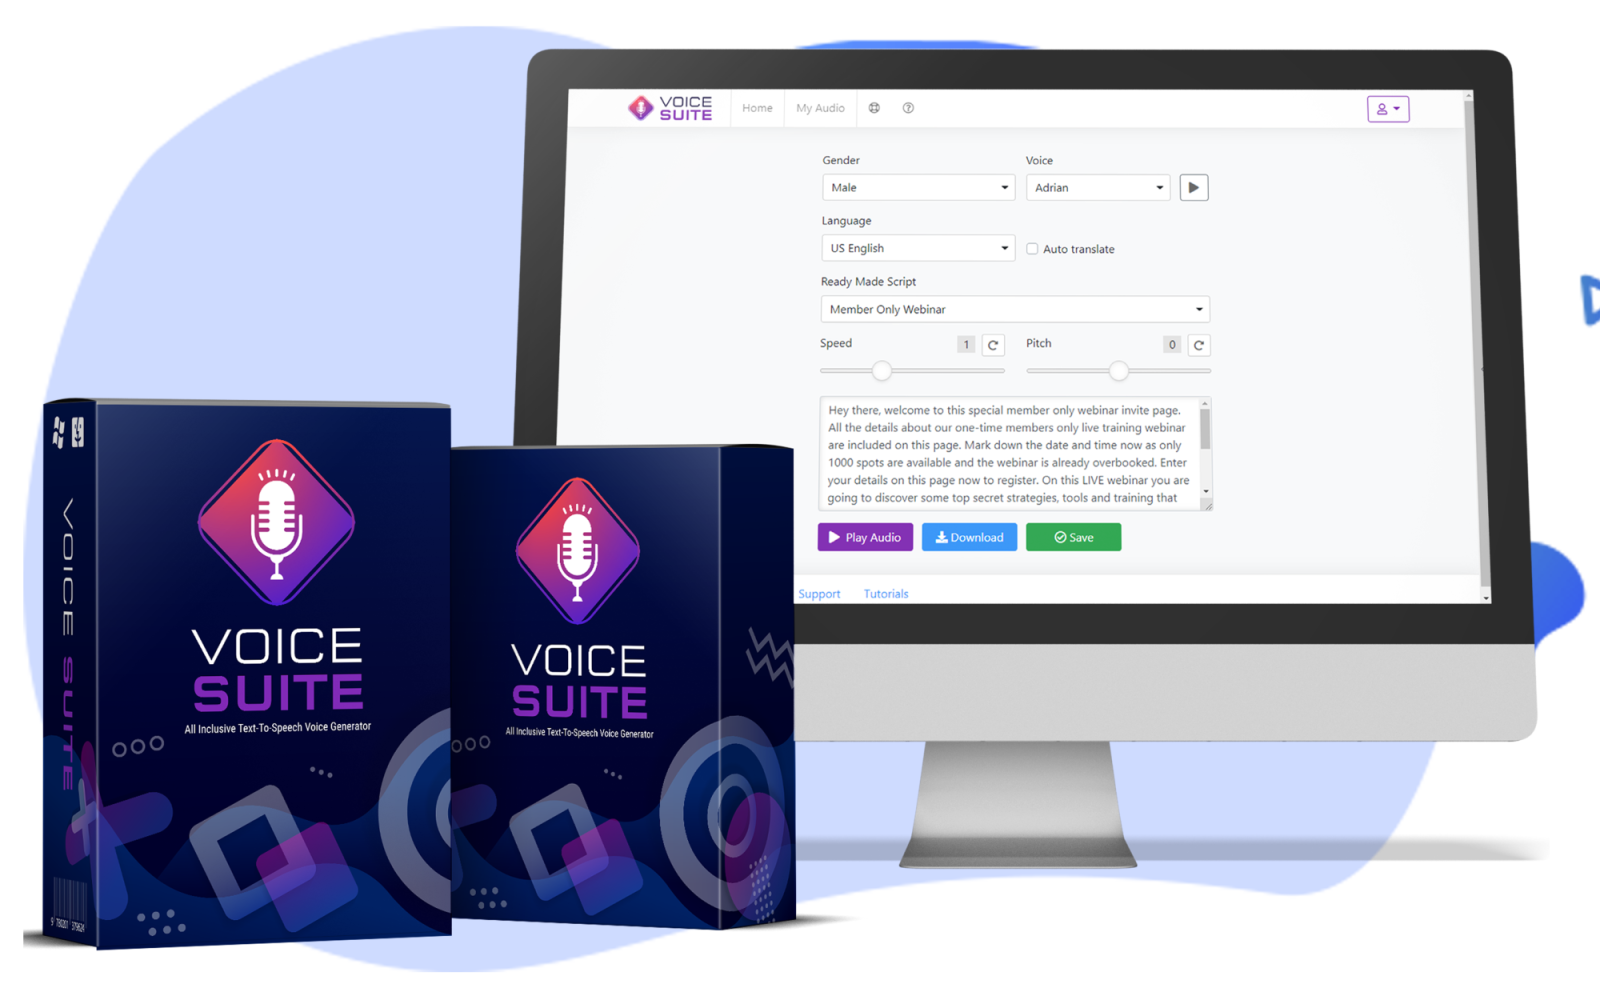 Upgrade #3 - VoiceSuite Unlimited - OTO ($39 Value)